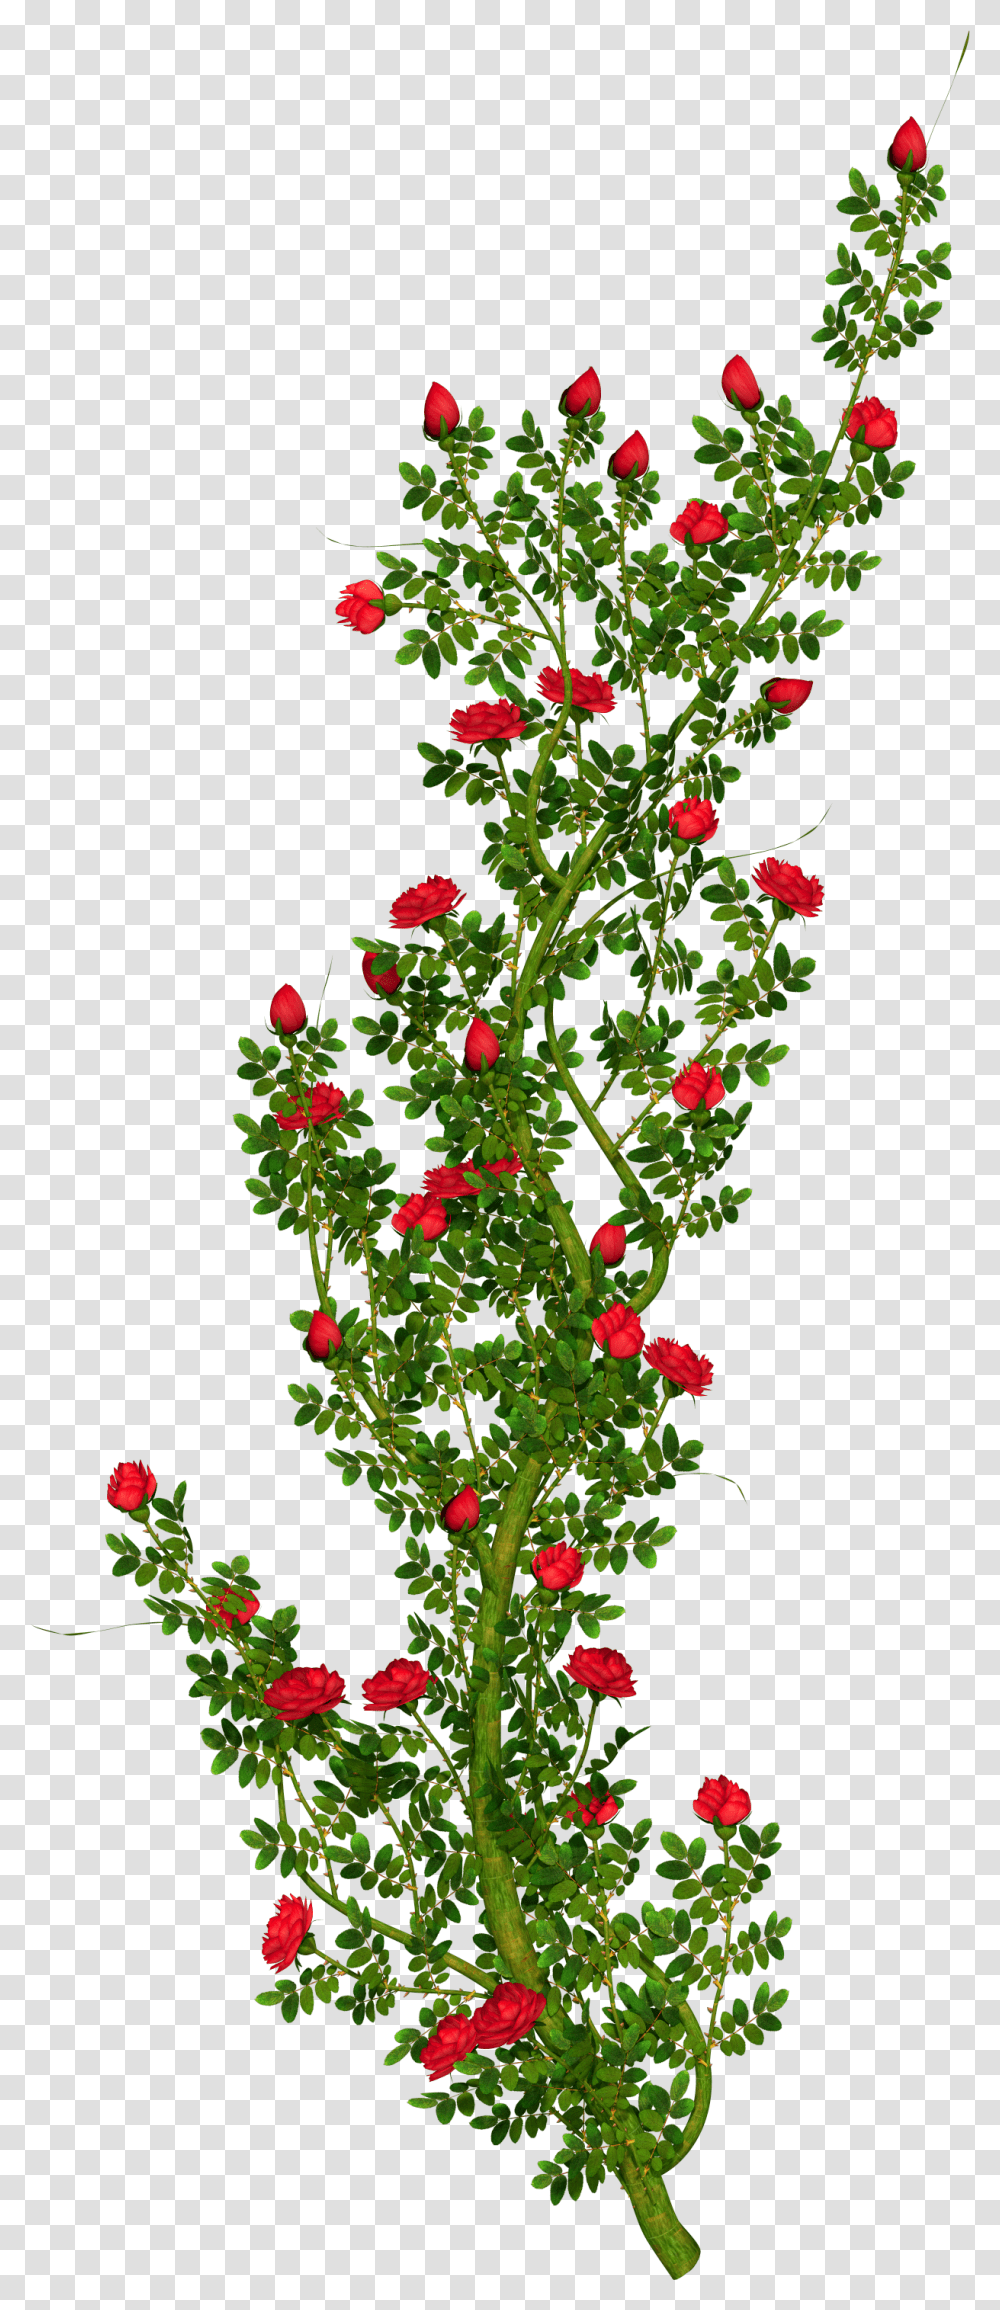 Free Flower Bush Download Rose Flower Tree Hd, Graphics, Art, Plant, Floral Design Transparent Png